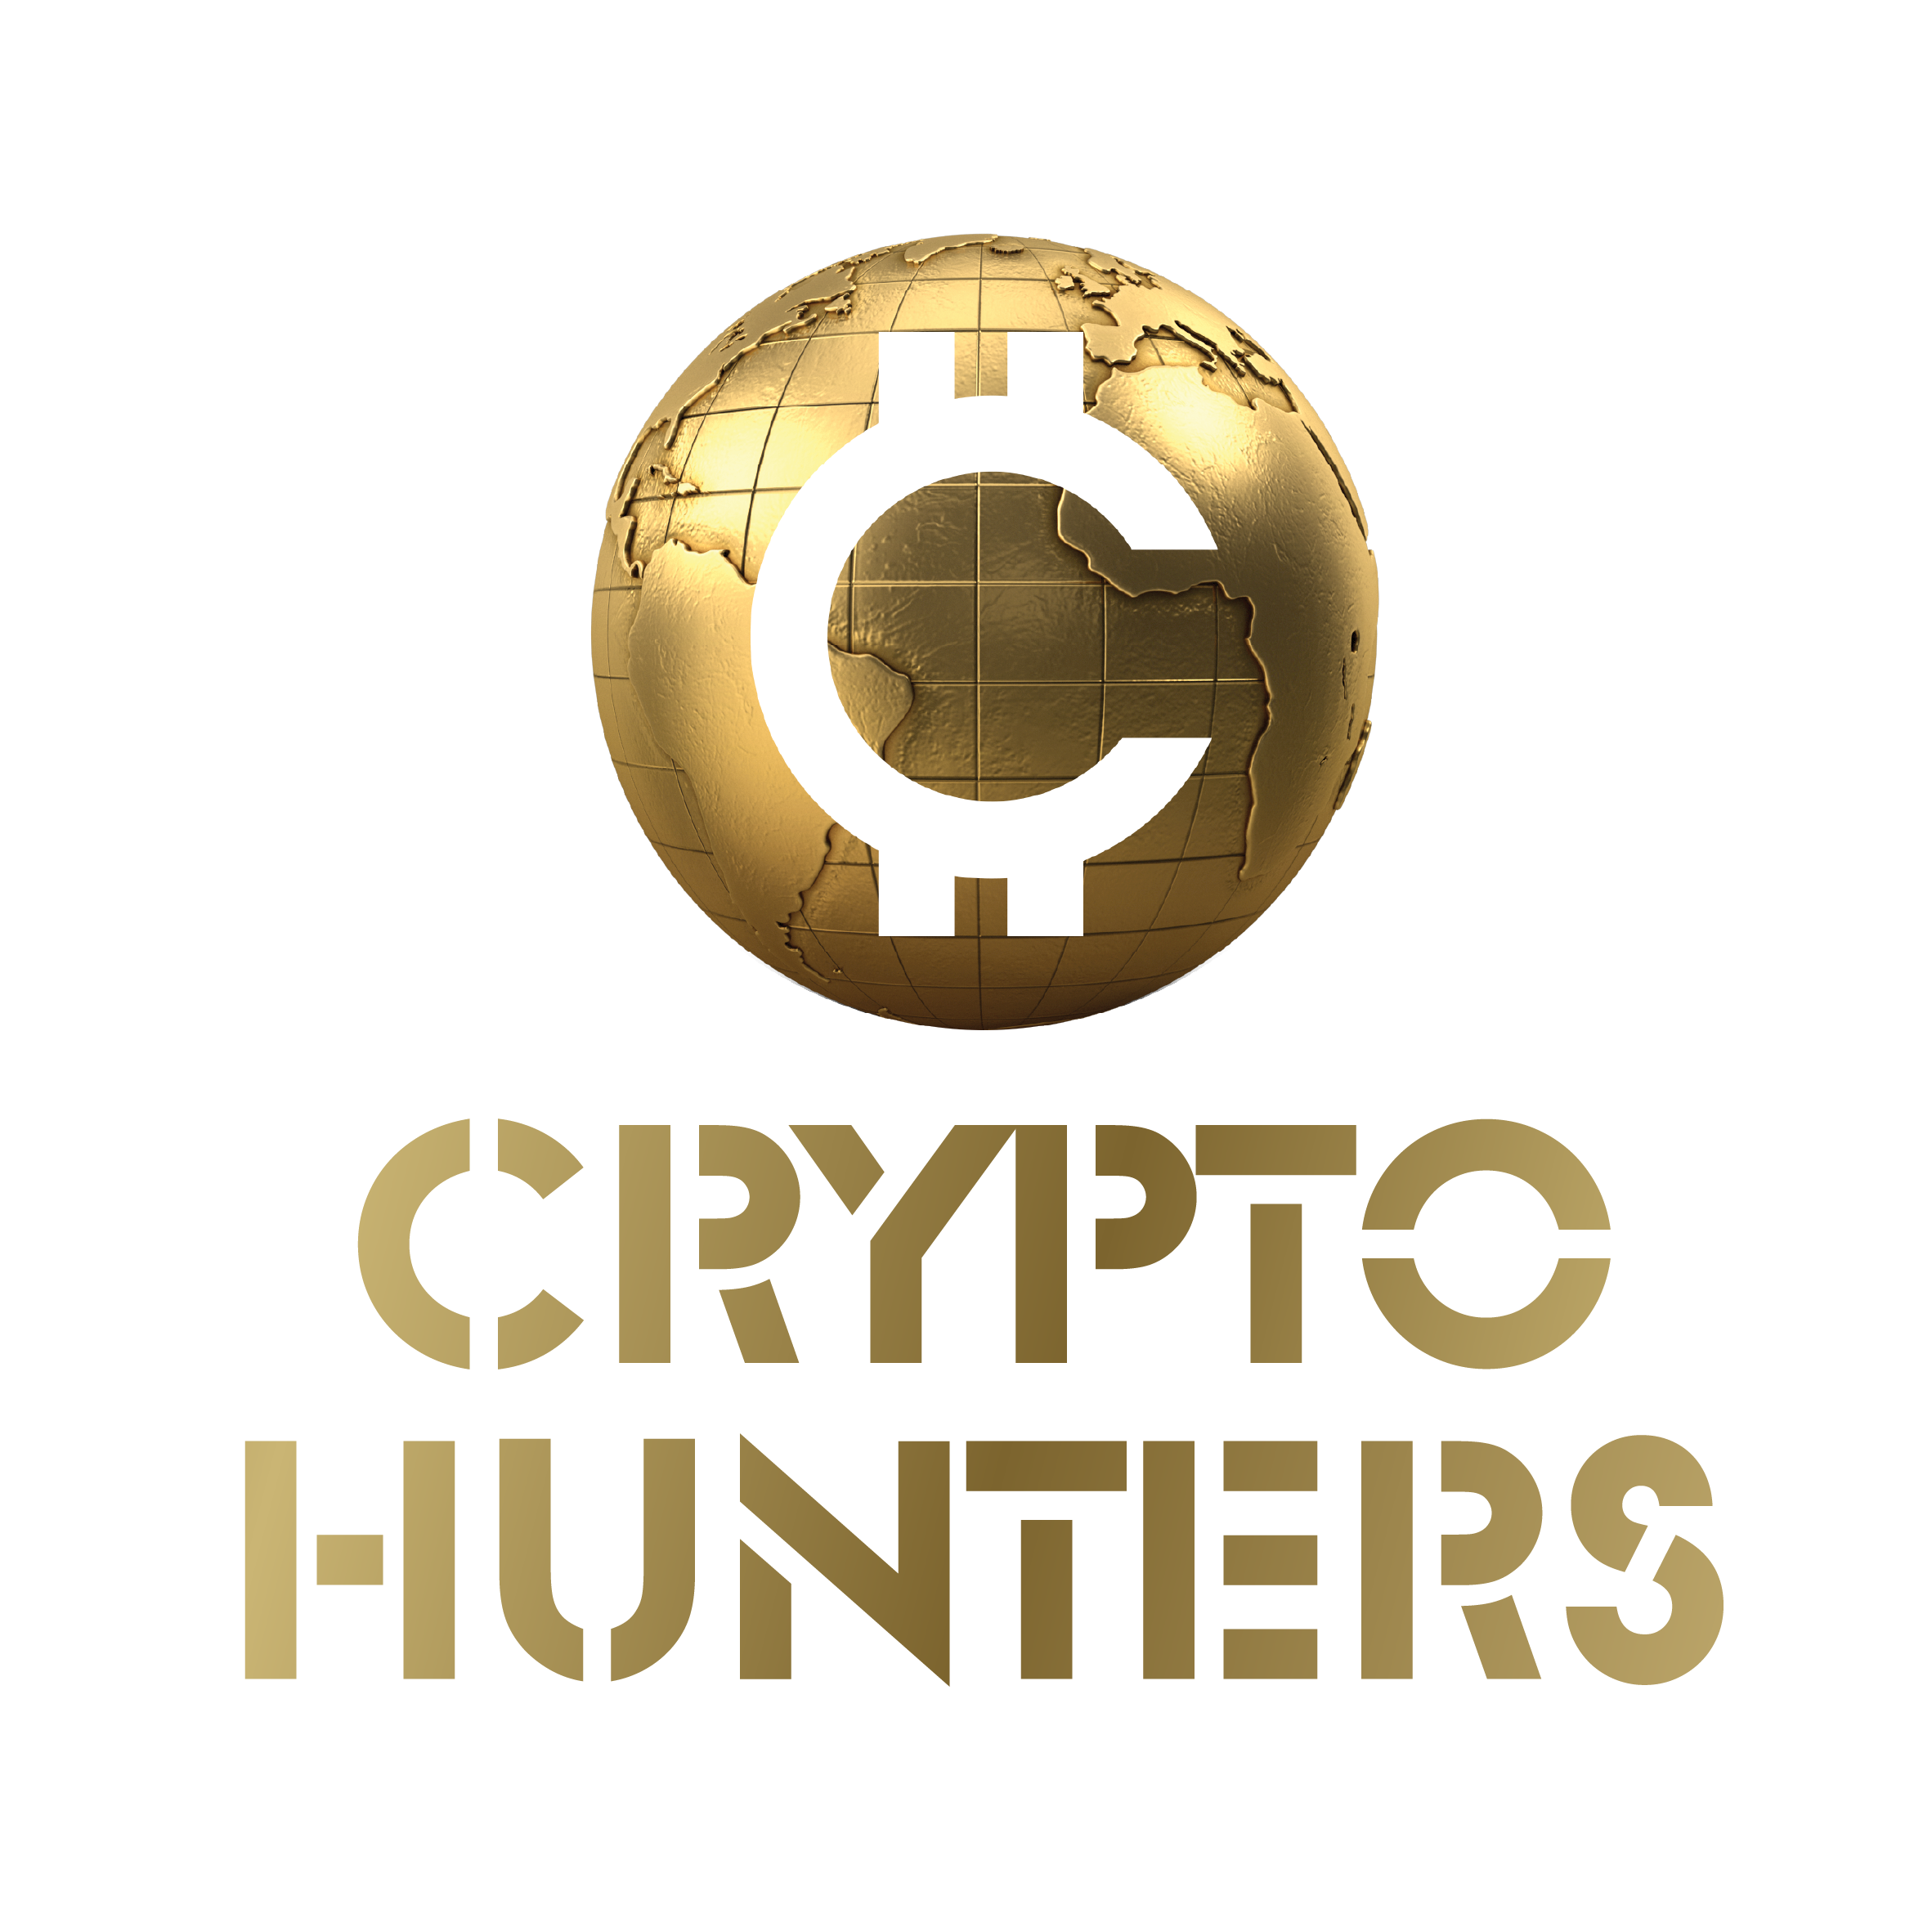 Crypto Hunters